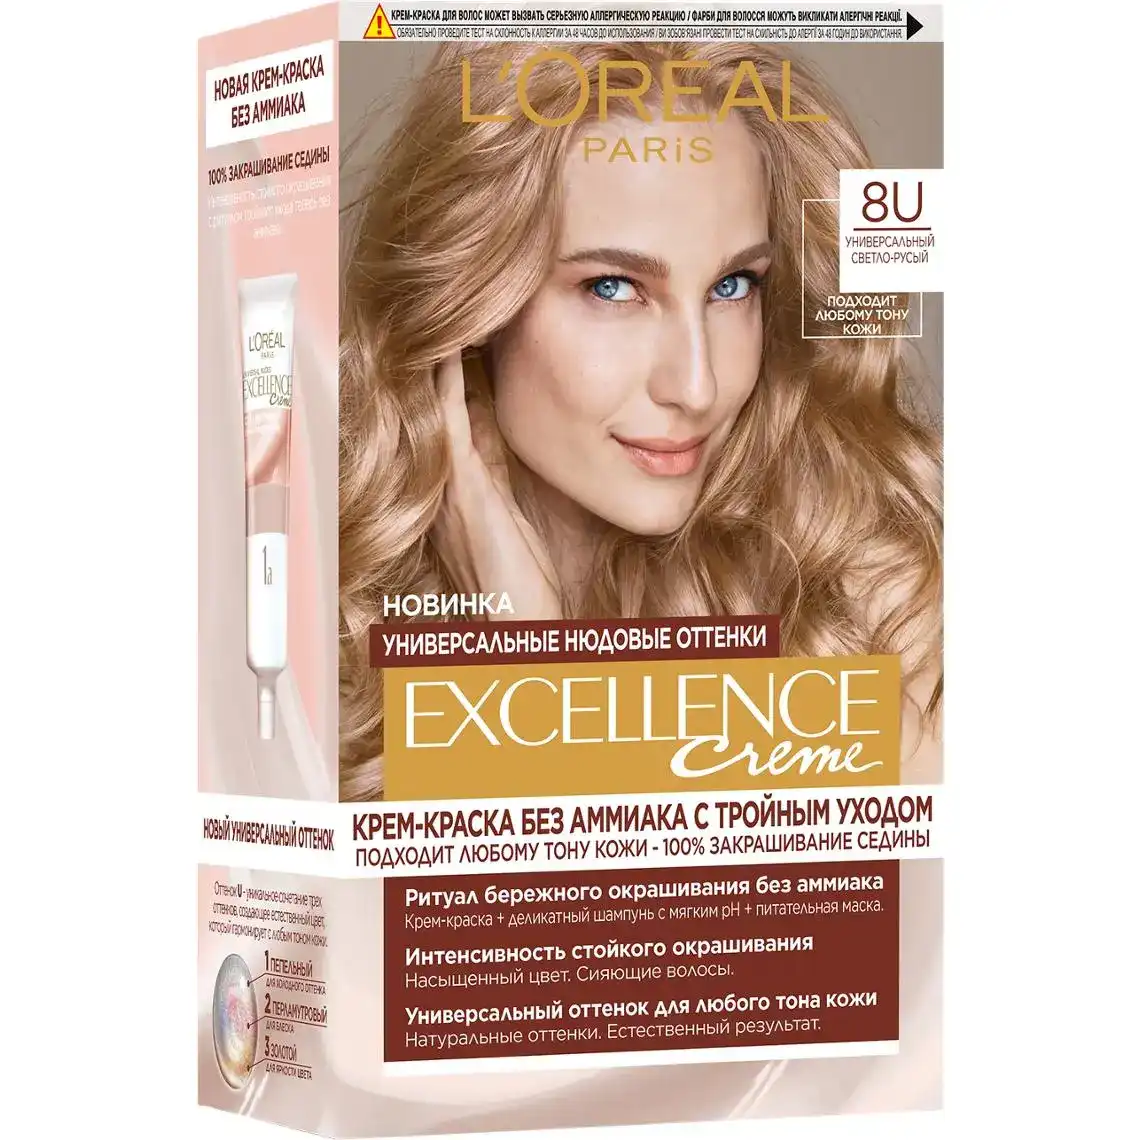 Крем-фарба для волосся L'Oreal Paris Excellence Creme №8U універсальний світло-русявий 1шт